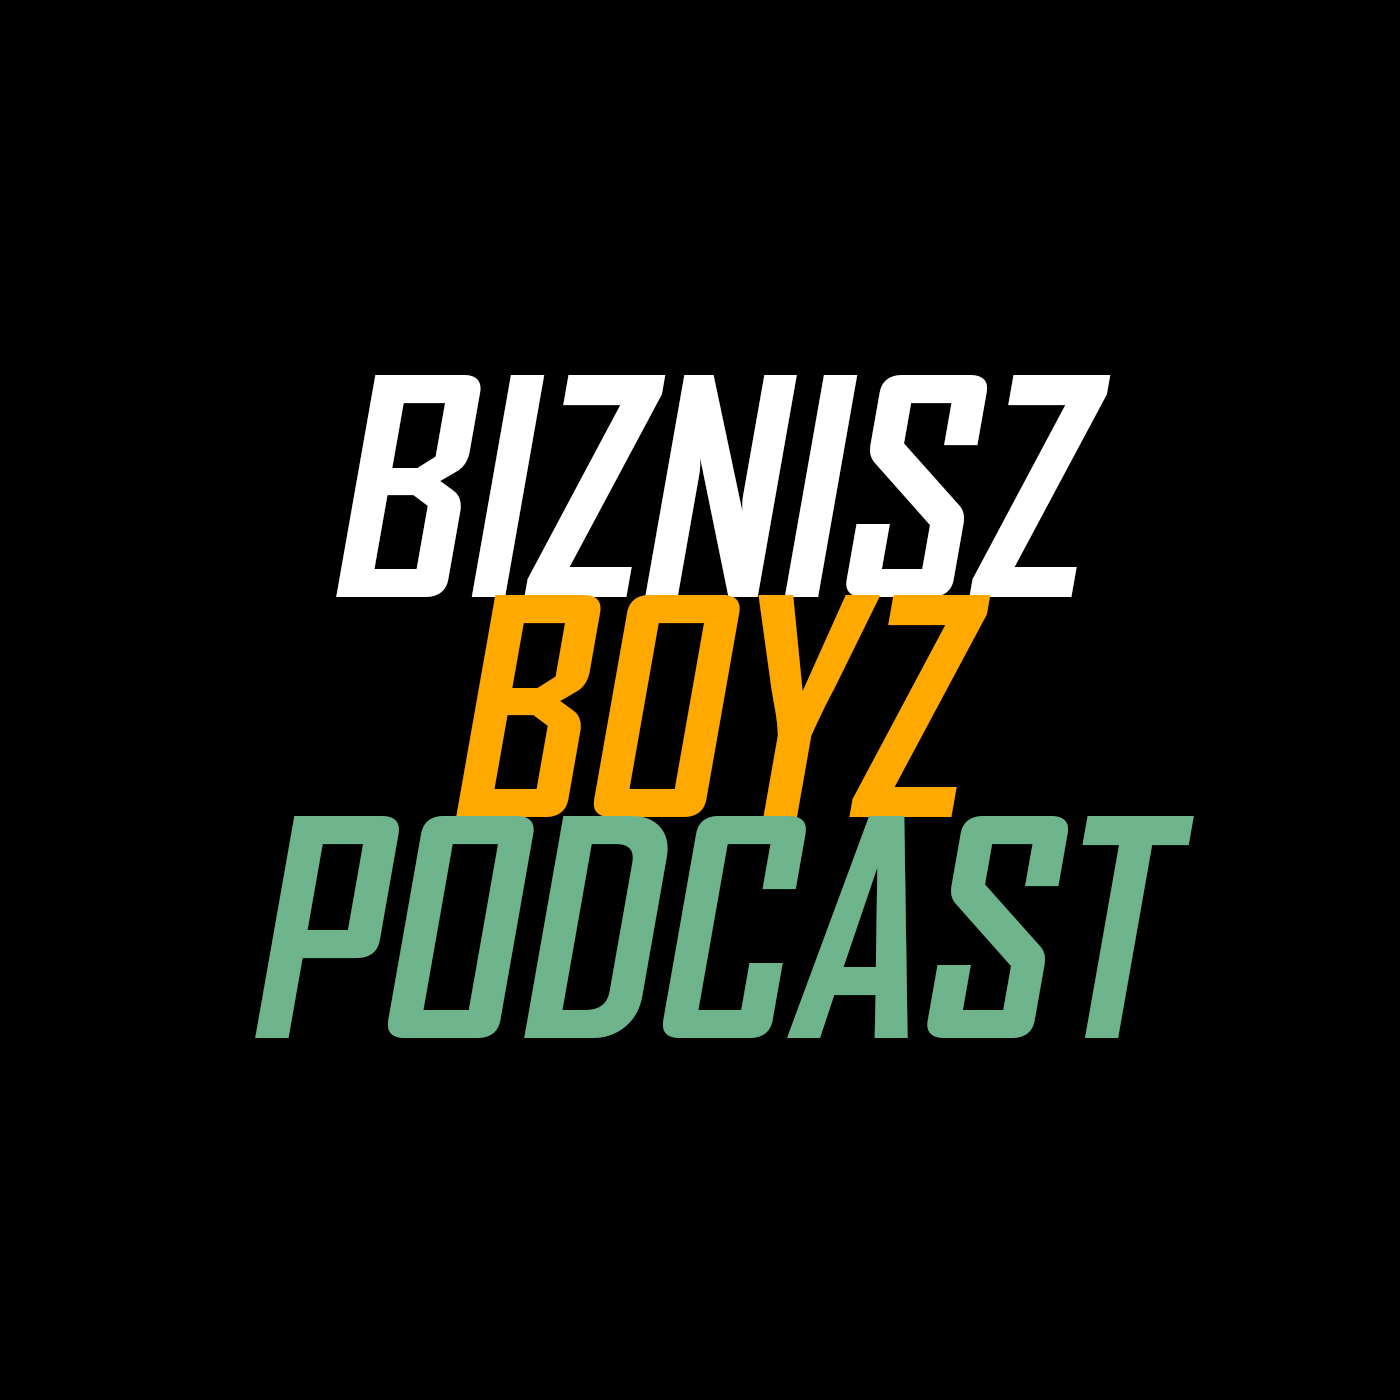 Biznisz Boyz podcast logó